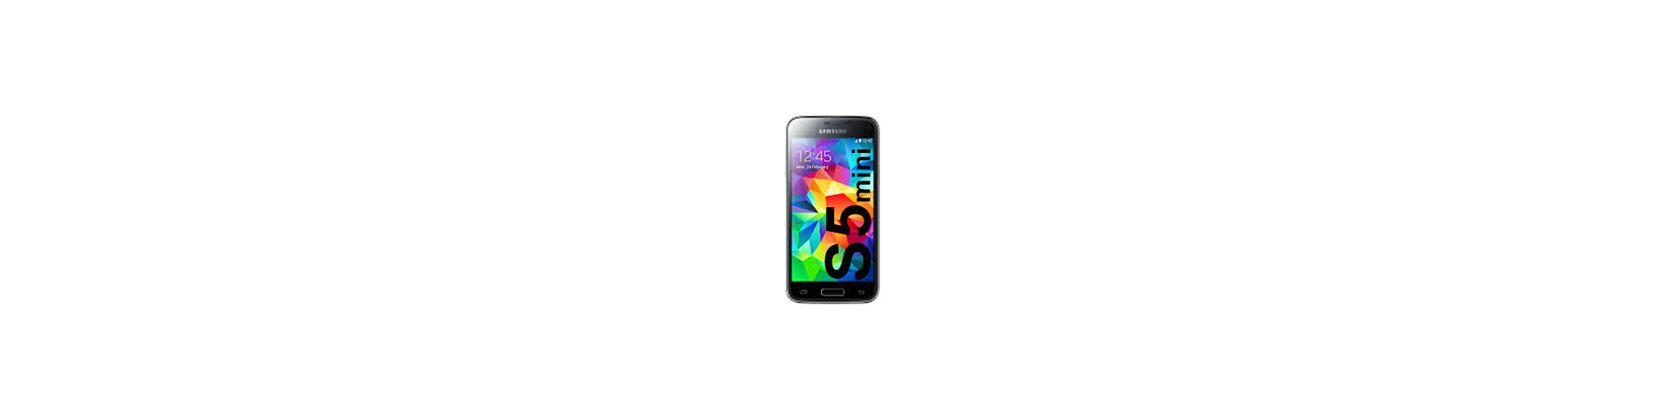 Galaxy S5 mini G800F